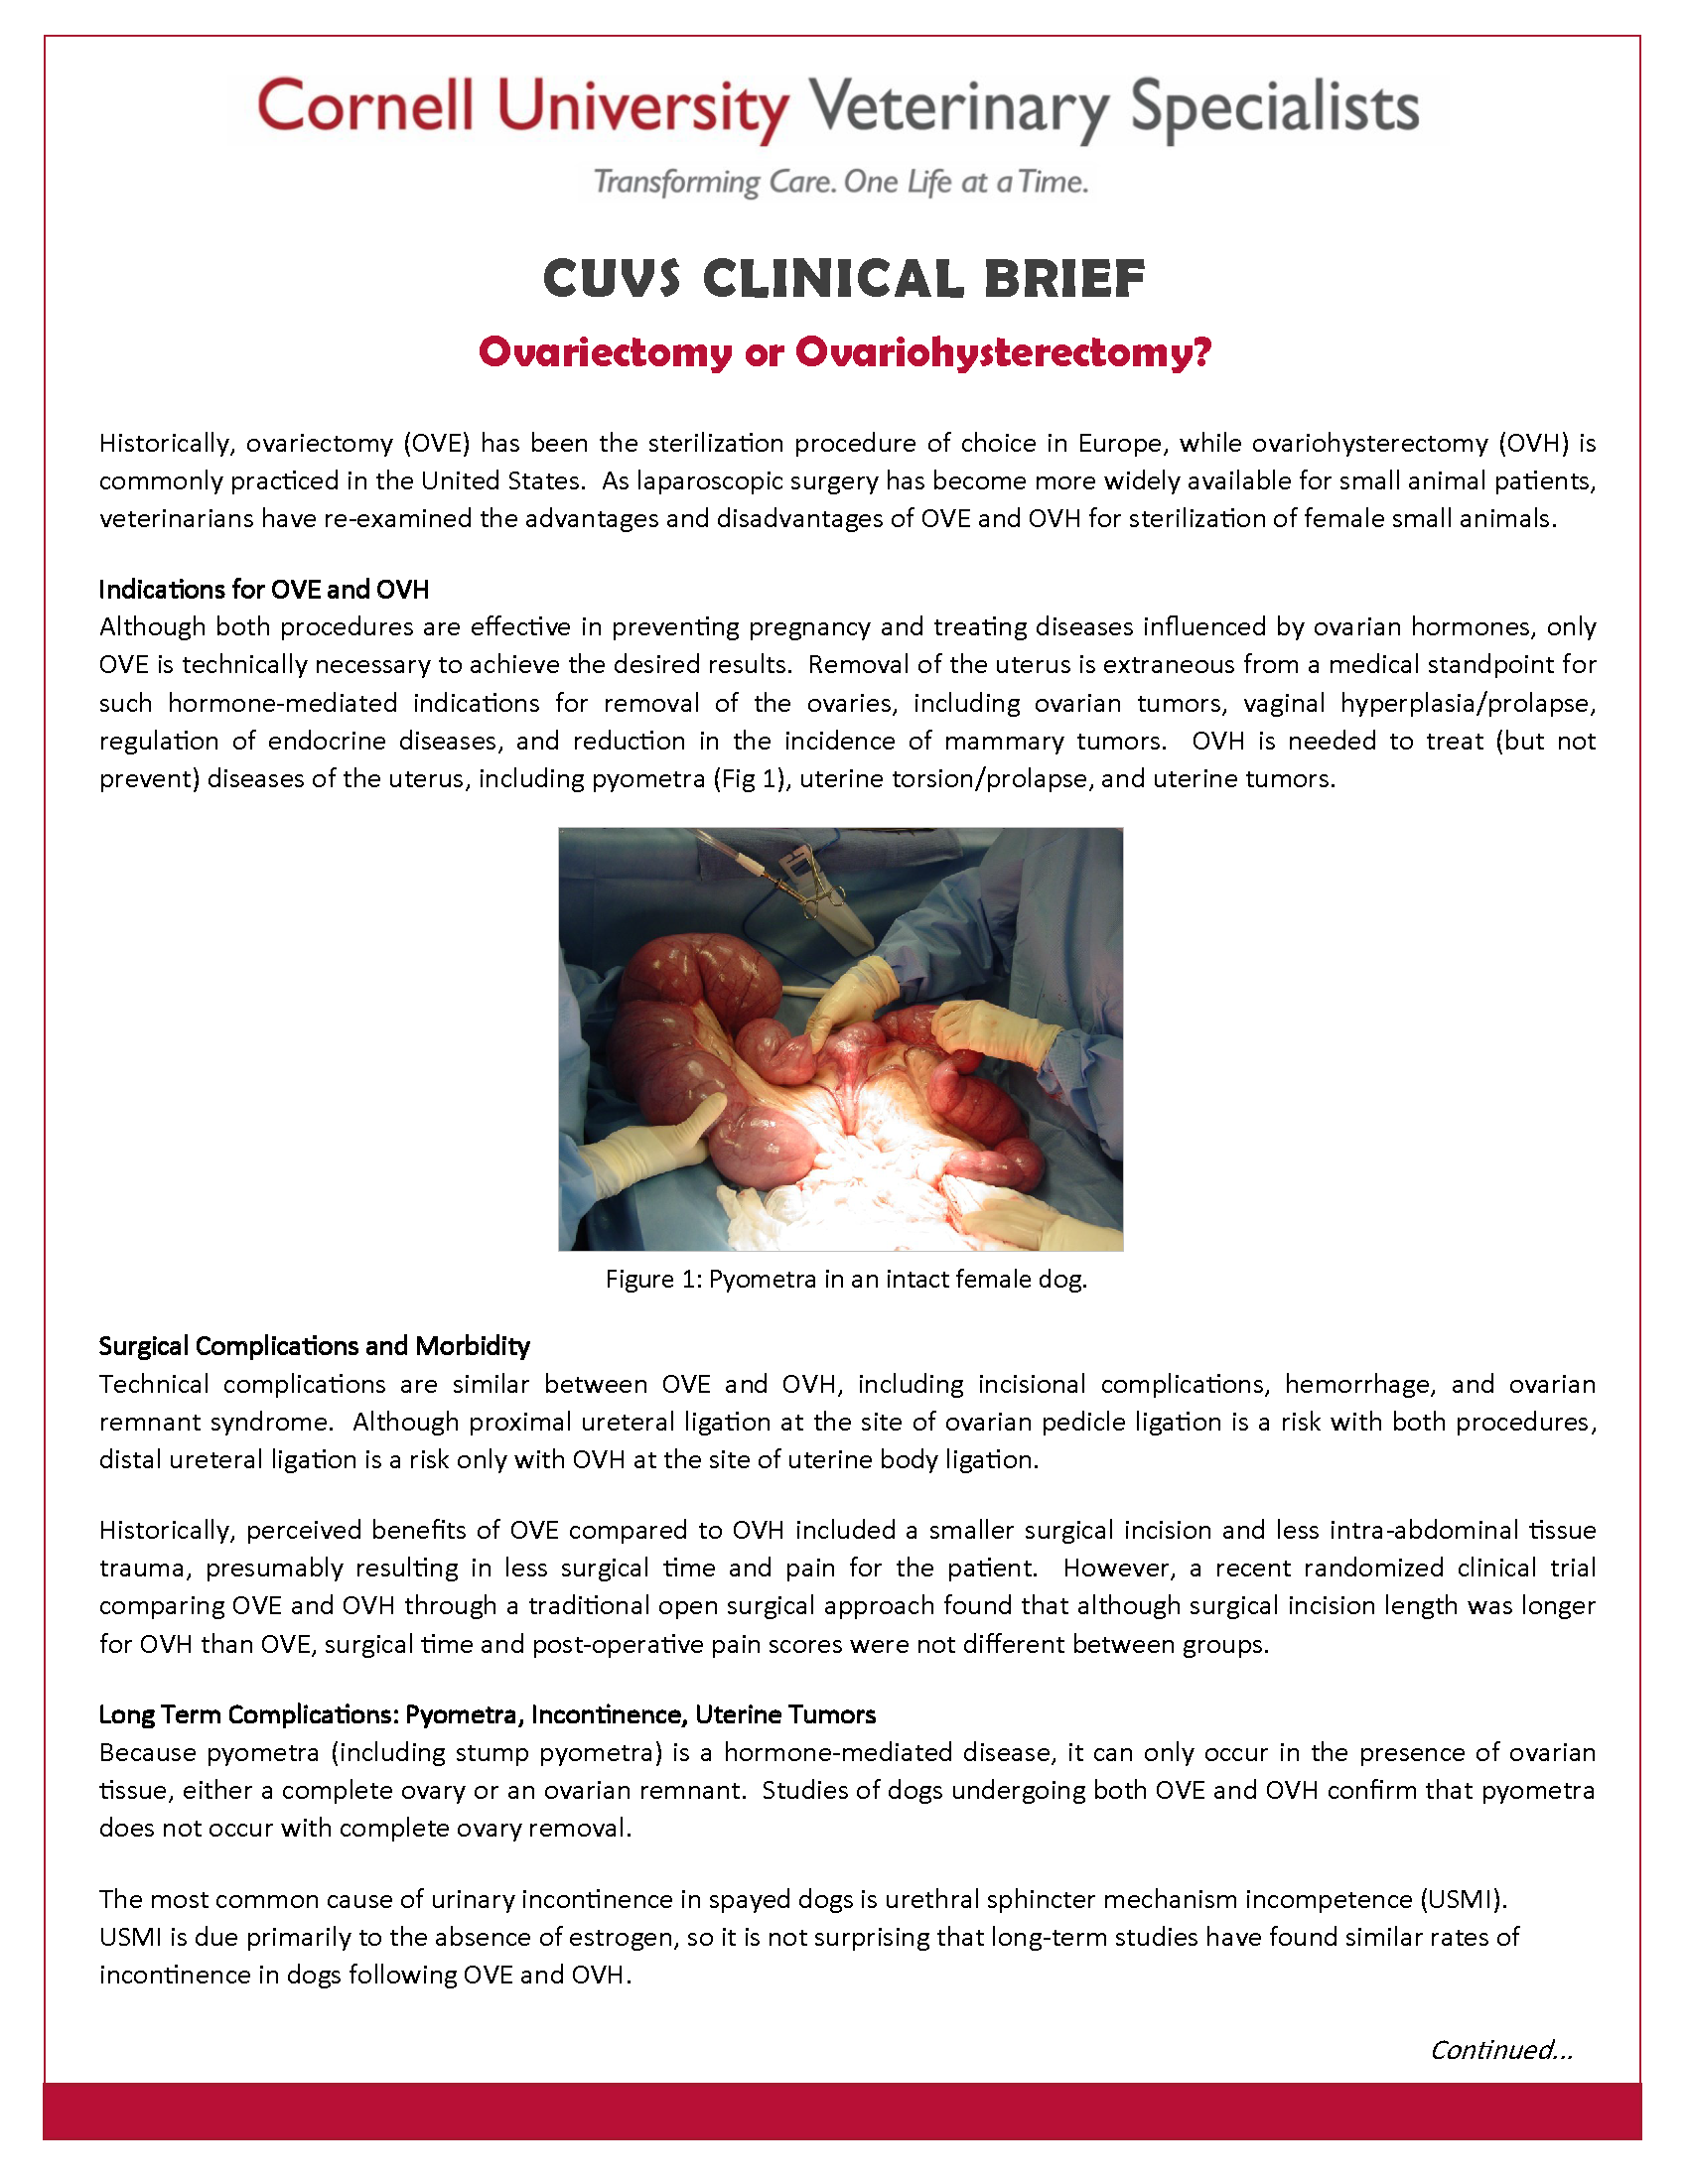 Veterinary Clinical Brief - Ovariectomy